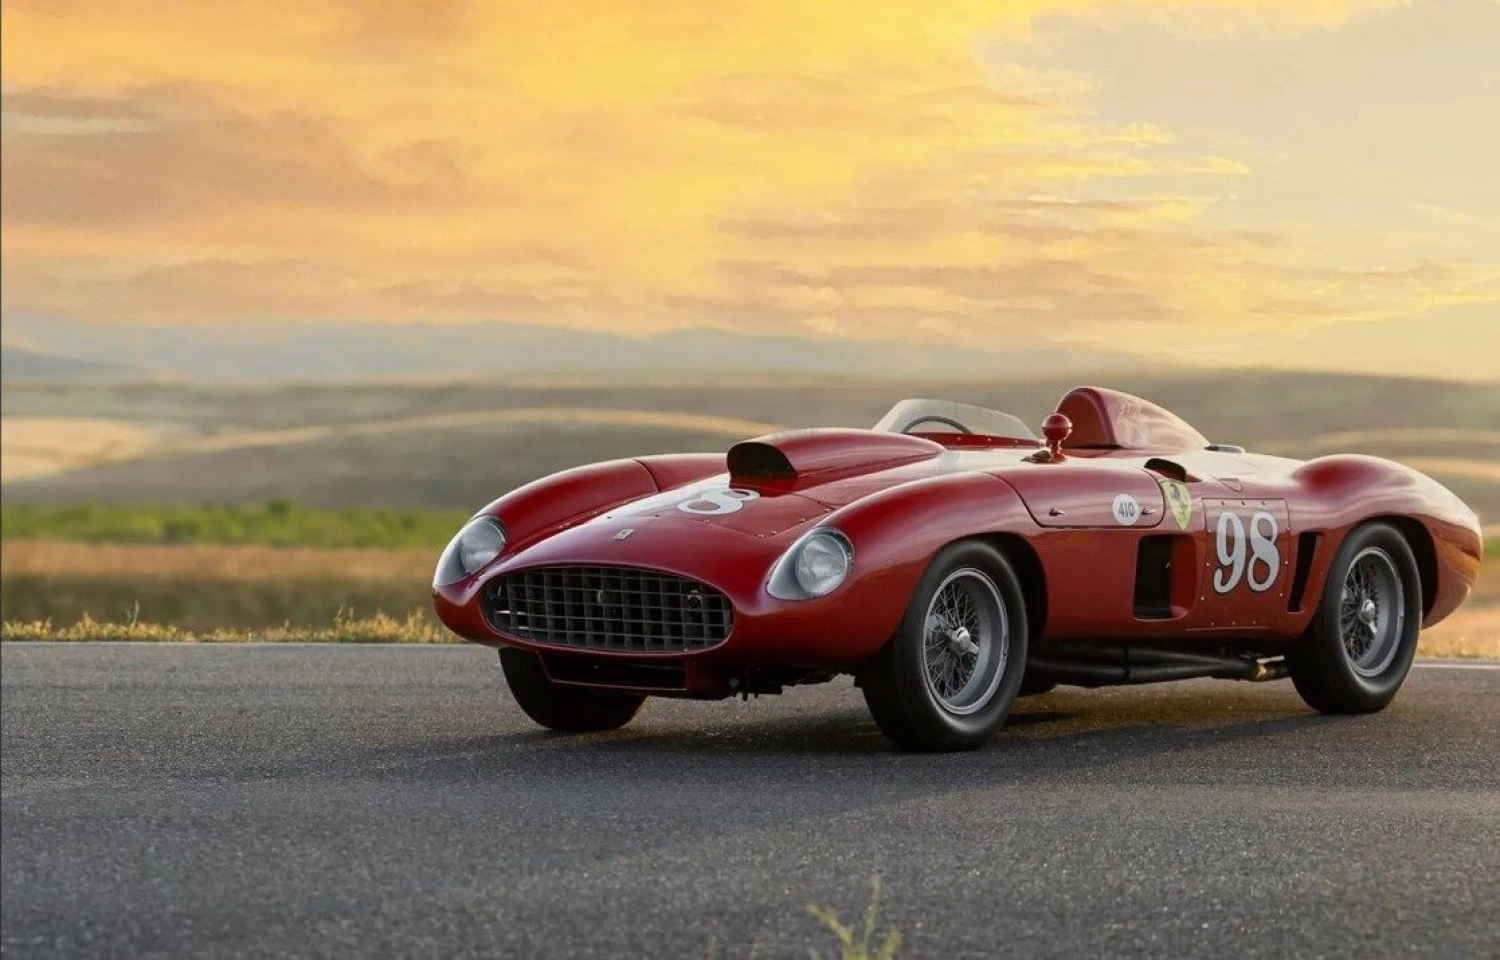 Podľa Enza Ferrariho jeho najlepšie auto. Teraz sa môže predať za 30 miliónov